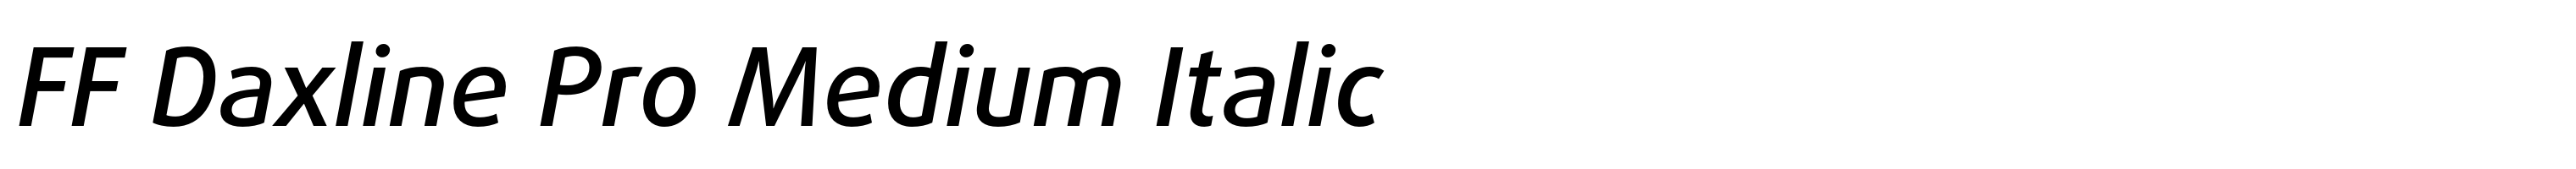 FF Daxline Pro Medium Italic